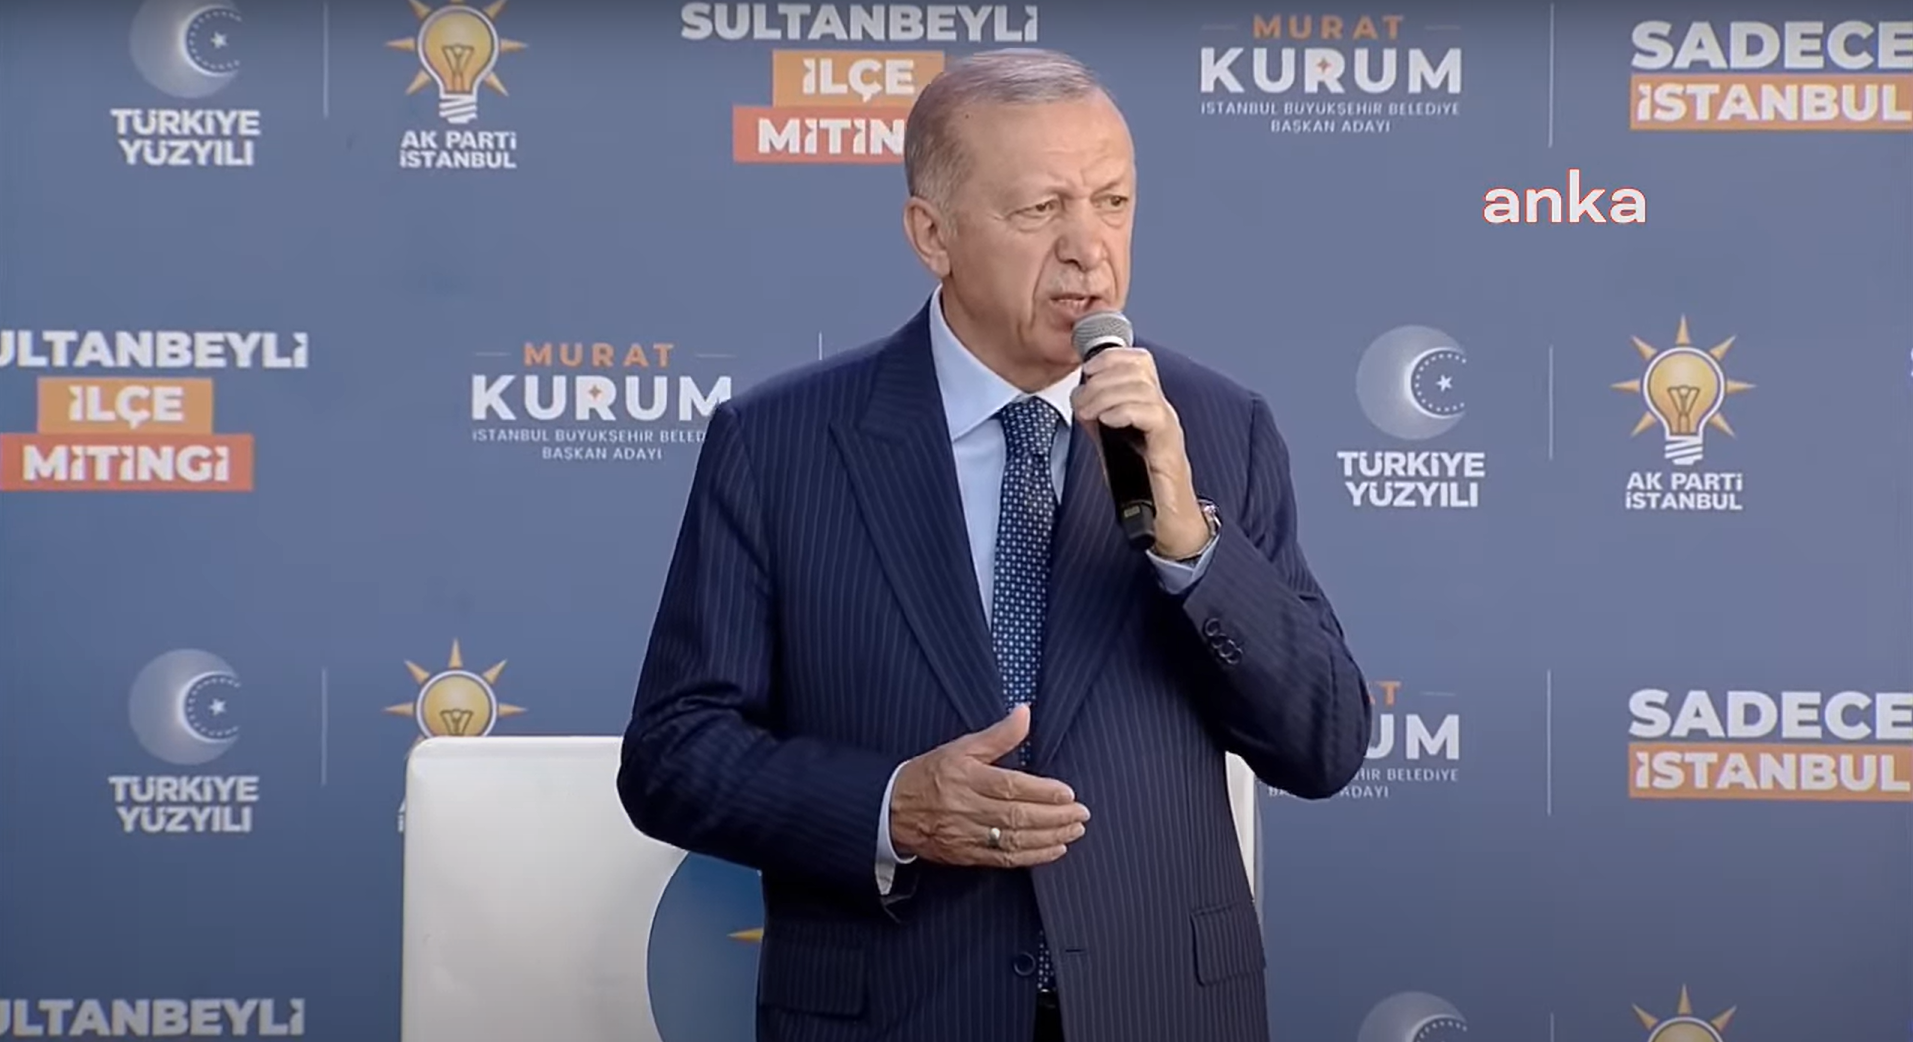 Cumhurbaşkanı Erdoğan, Sultanbeyli'de konuştu: Üzerimize tuzak üstüne tuzak kuruldu